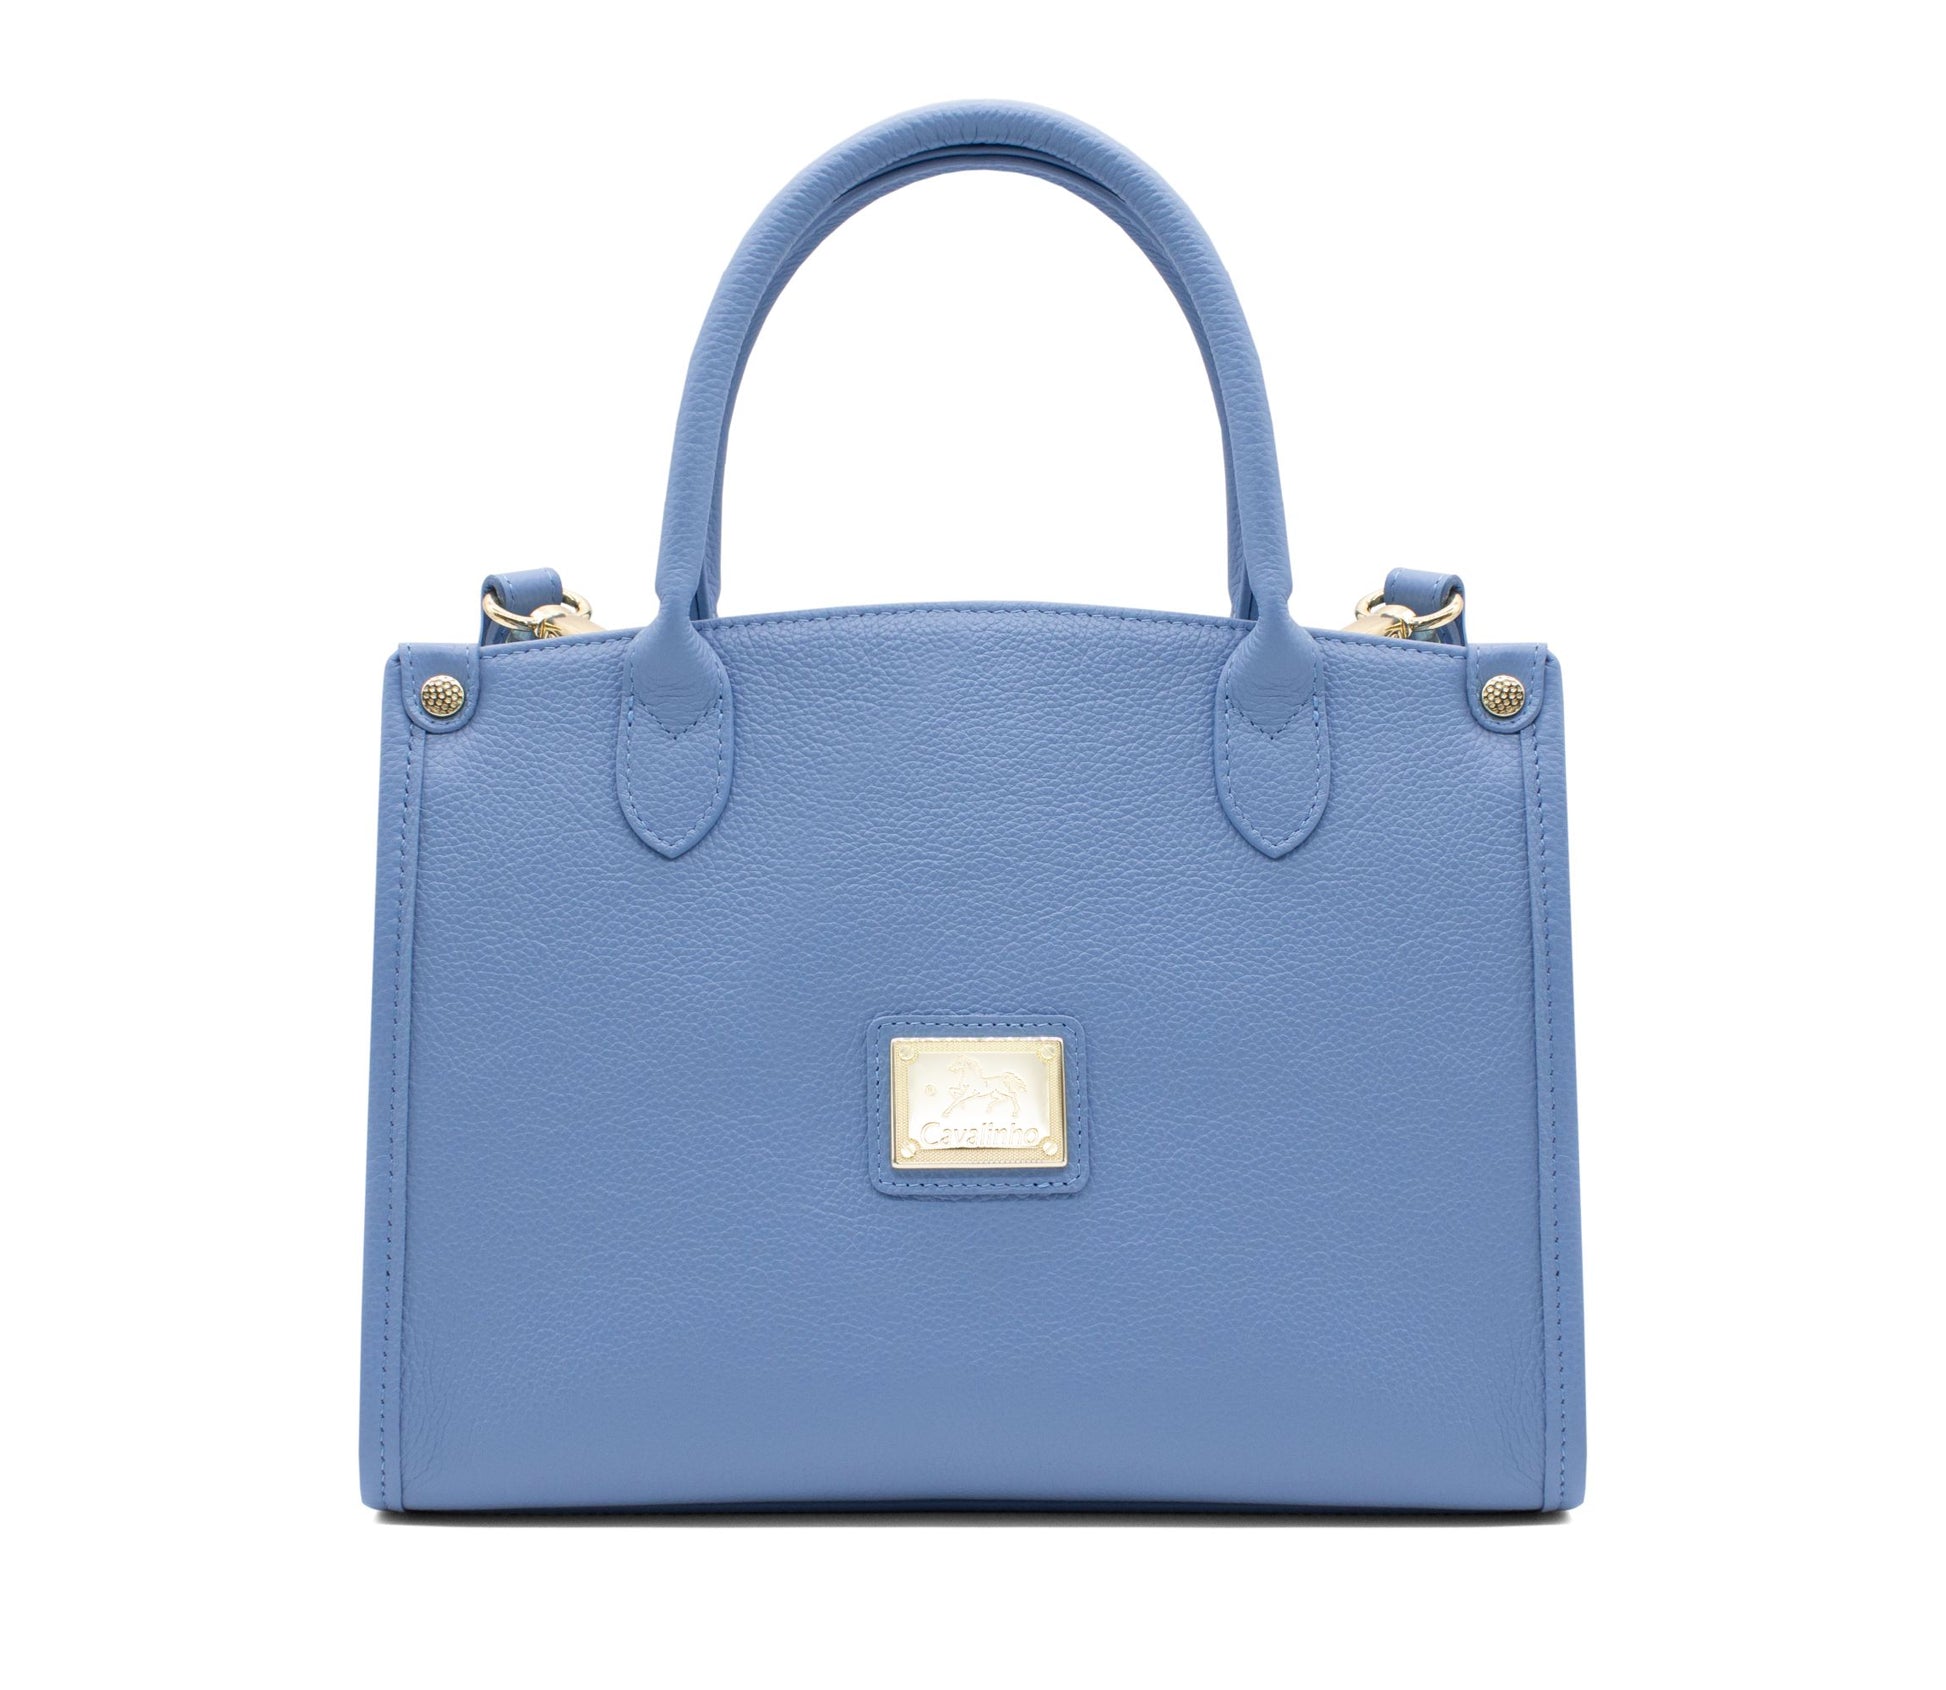 #color_ CornflowerBlue | Cavalinho Muse Leather Handbag - CornflowerBlue - 18300480.10_1